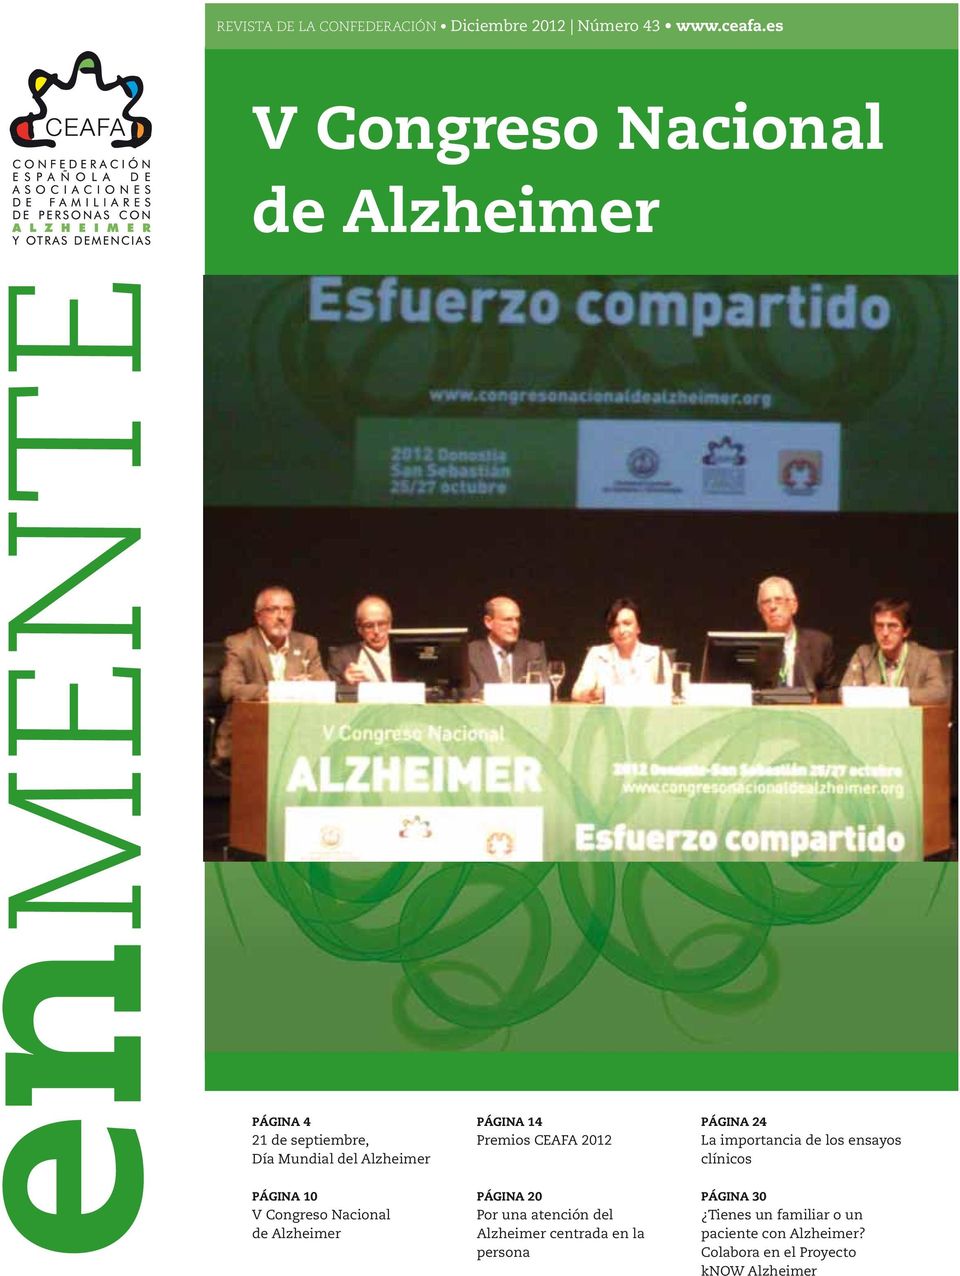 Congreso Nacional de Alzheimer PÁGINA 14 Premios CEAFA 2012 PÁGINA 20 Por una atención del Alzheimer centrada